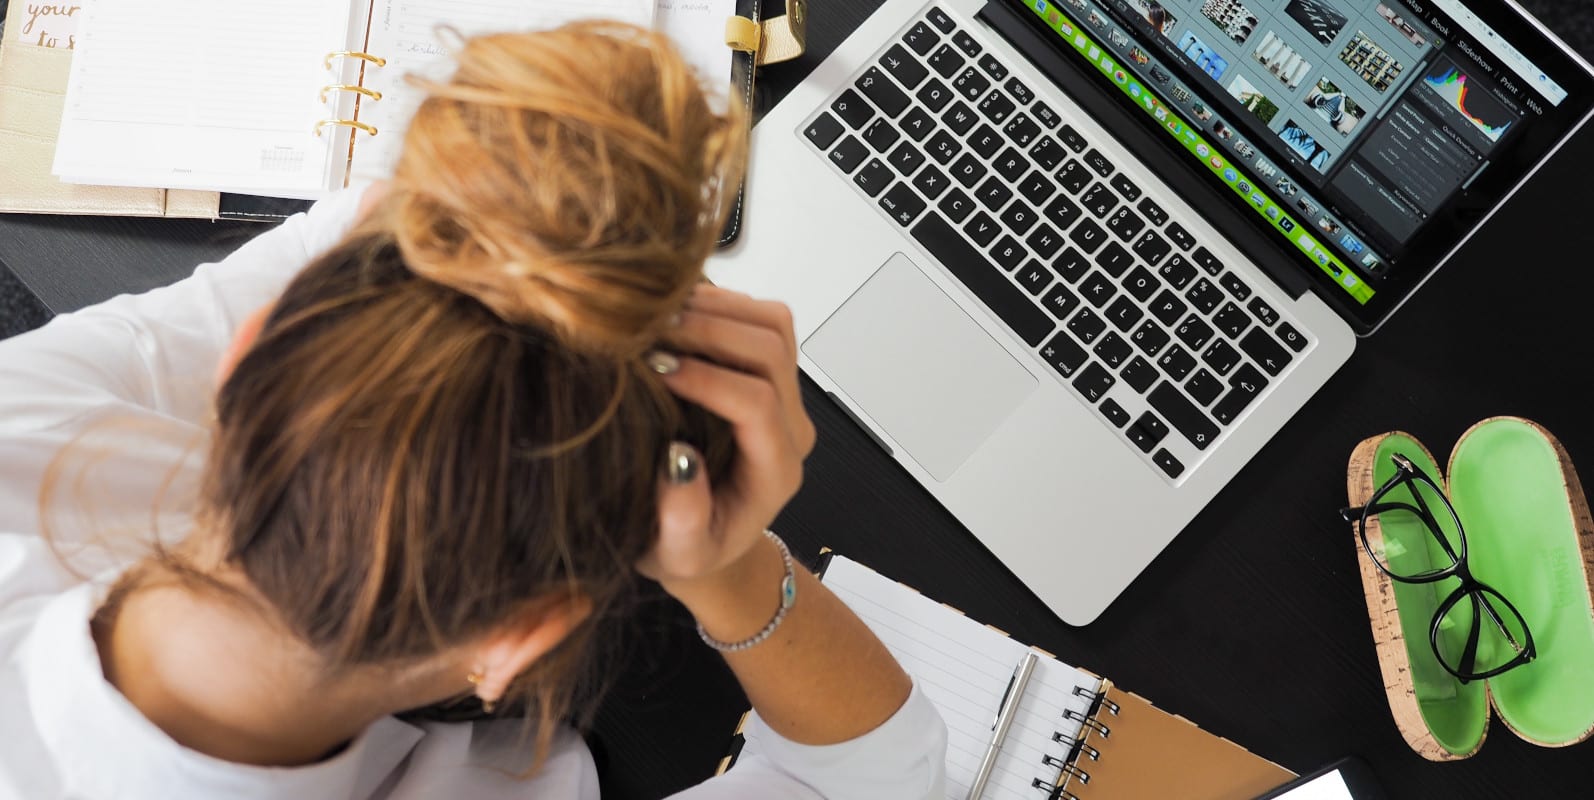 Eine junge Frau sitzt vor ihrem Laptop mit dem Kopf in ihren Händen - Symbolbild für Stress im Studium.